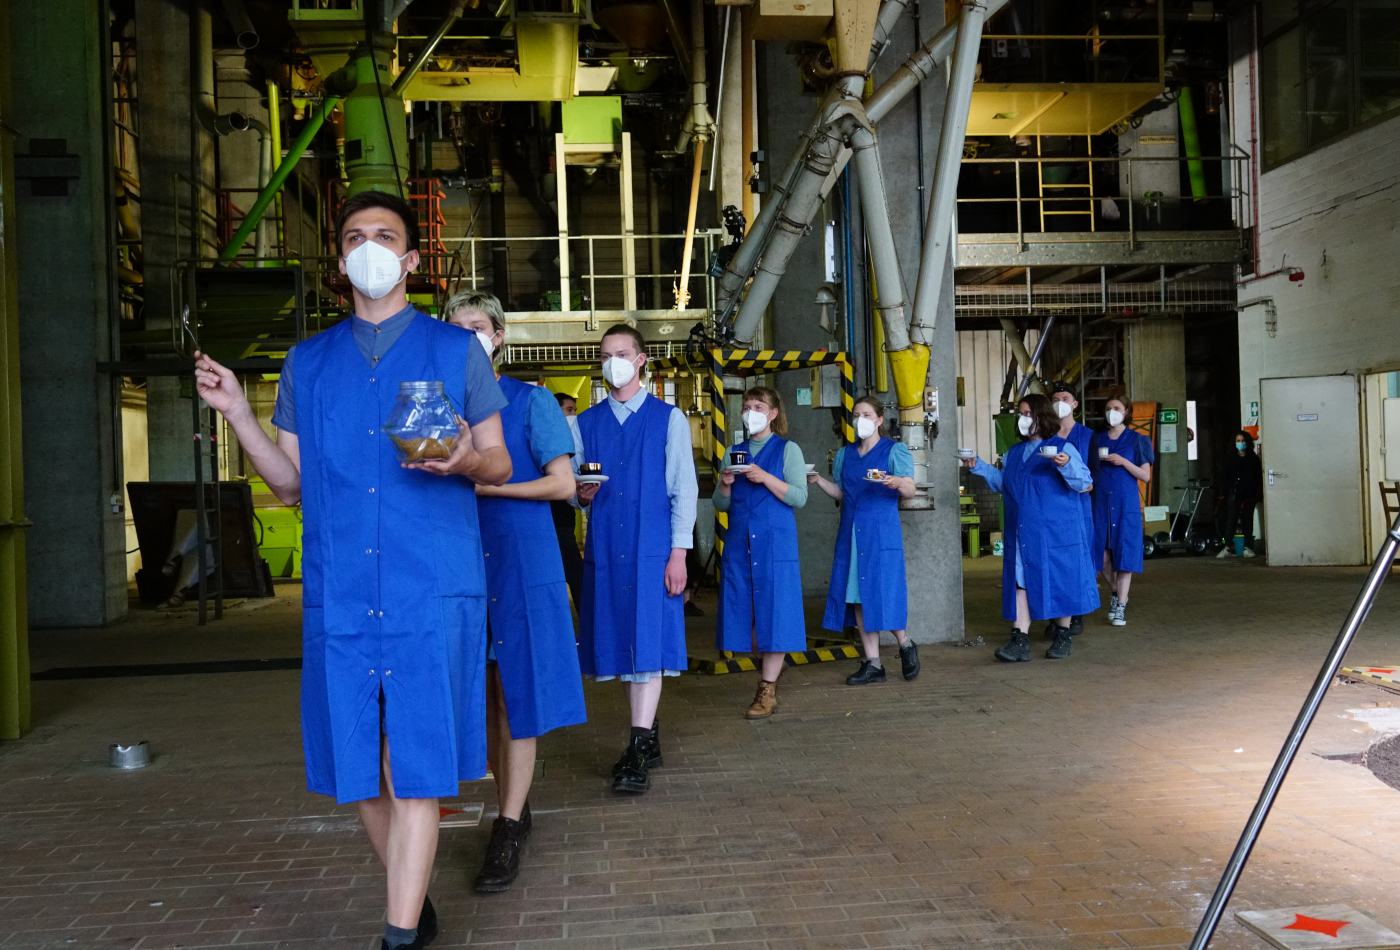 Personen mit blauen Kitteln laufen durch eine Produktionshalle.